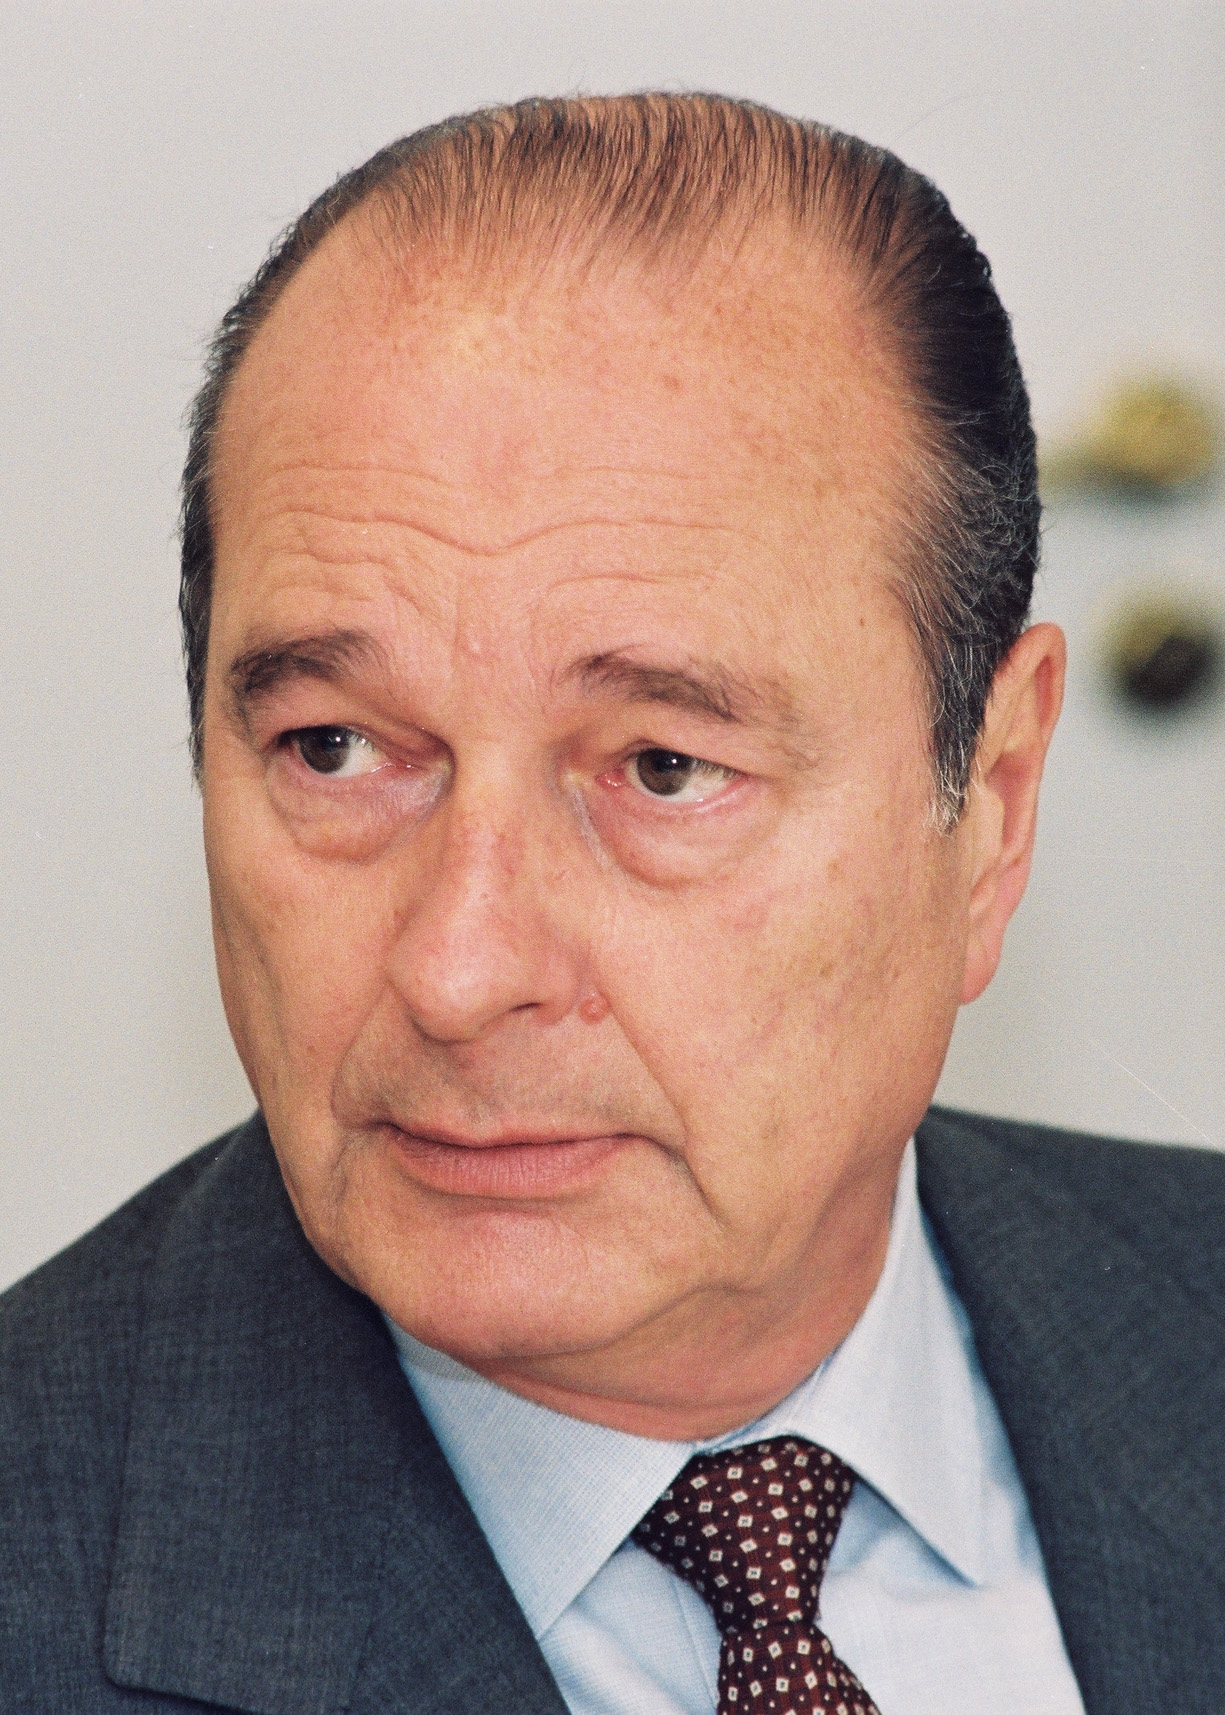 auteur Jacques Chirac de la citation La défense antimissile nationale est de nature pour retirer une prolifération d'armes, notamment des missiles nucléaires. Tout ce qui va dans le sens de la prolifération est une mauvaise direction.